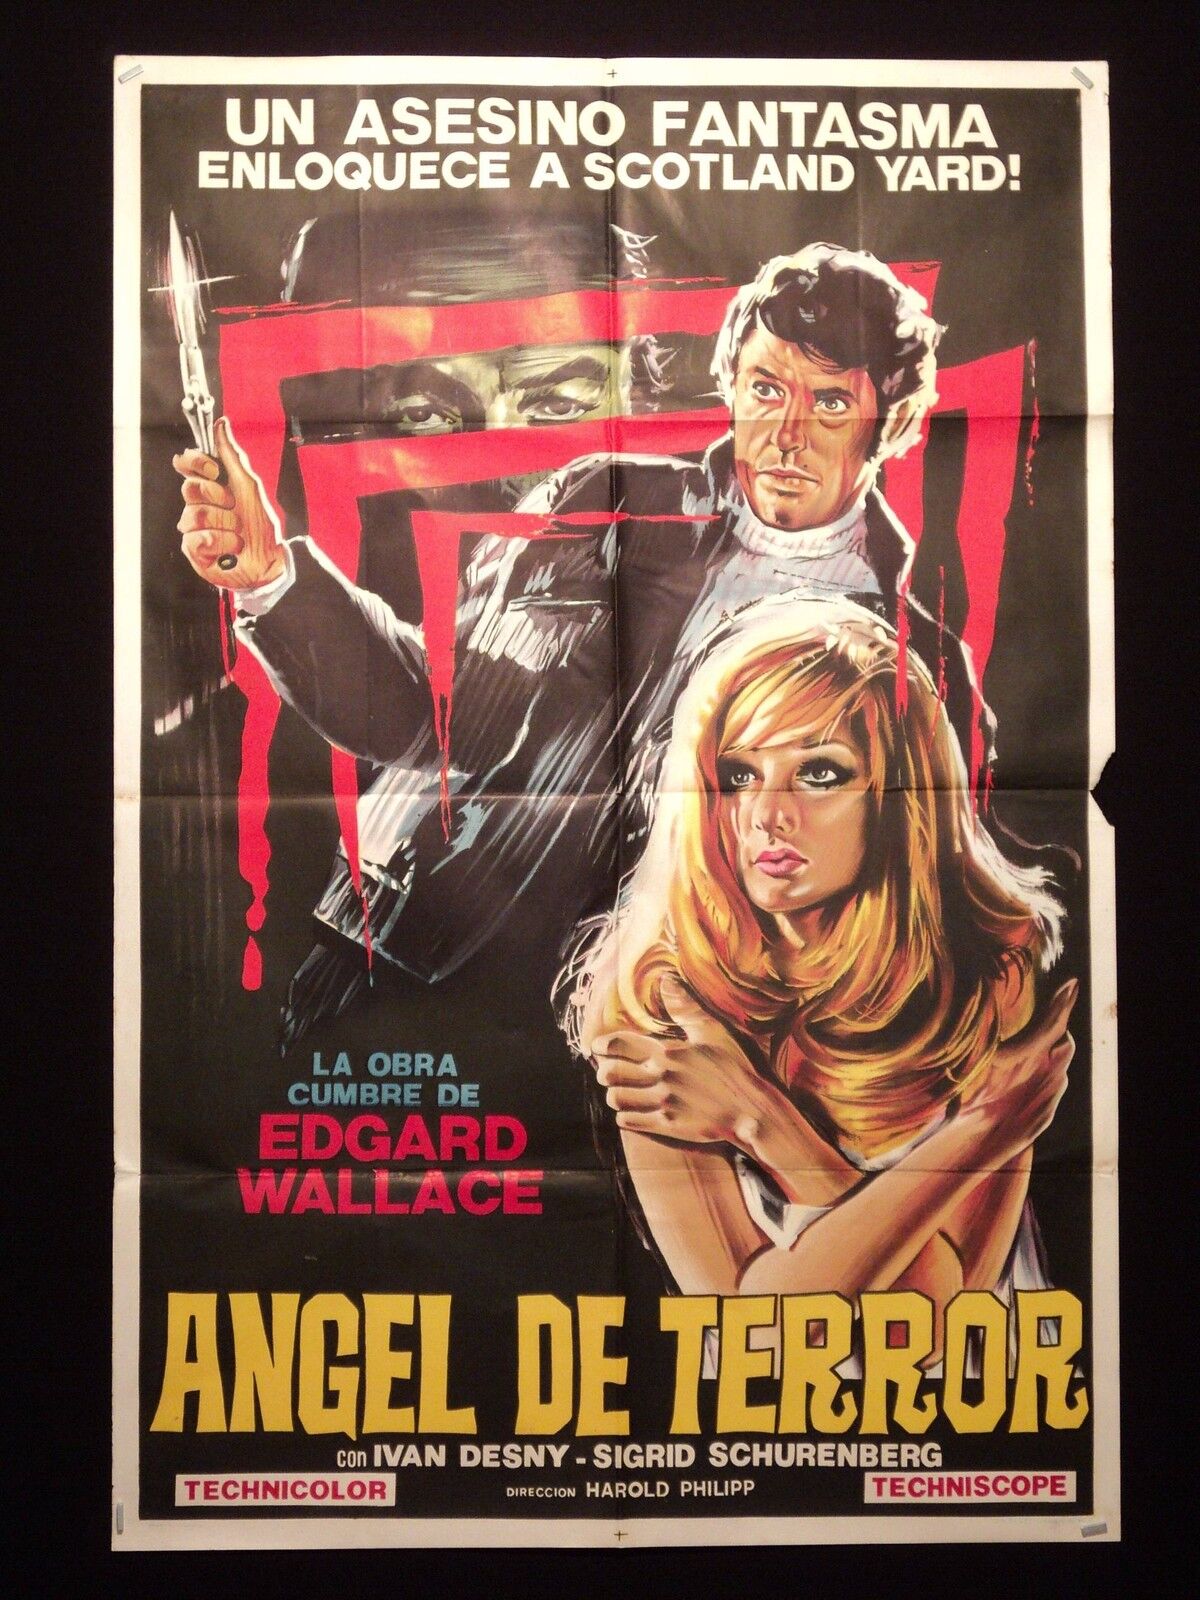 ANGELS OF TERROR (1971) * USCHI GLAS * ARGENTINE 1sh MOVIE POSTER